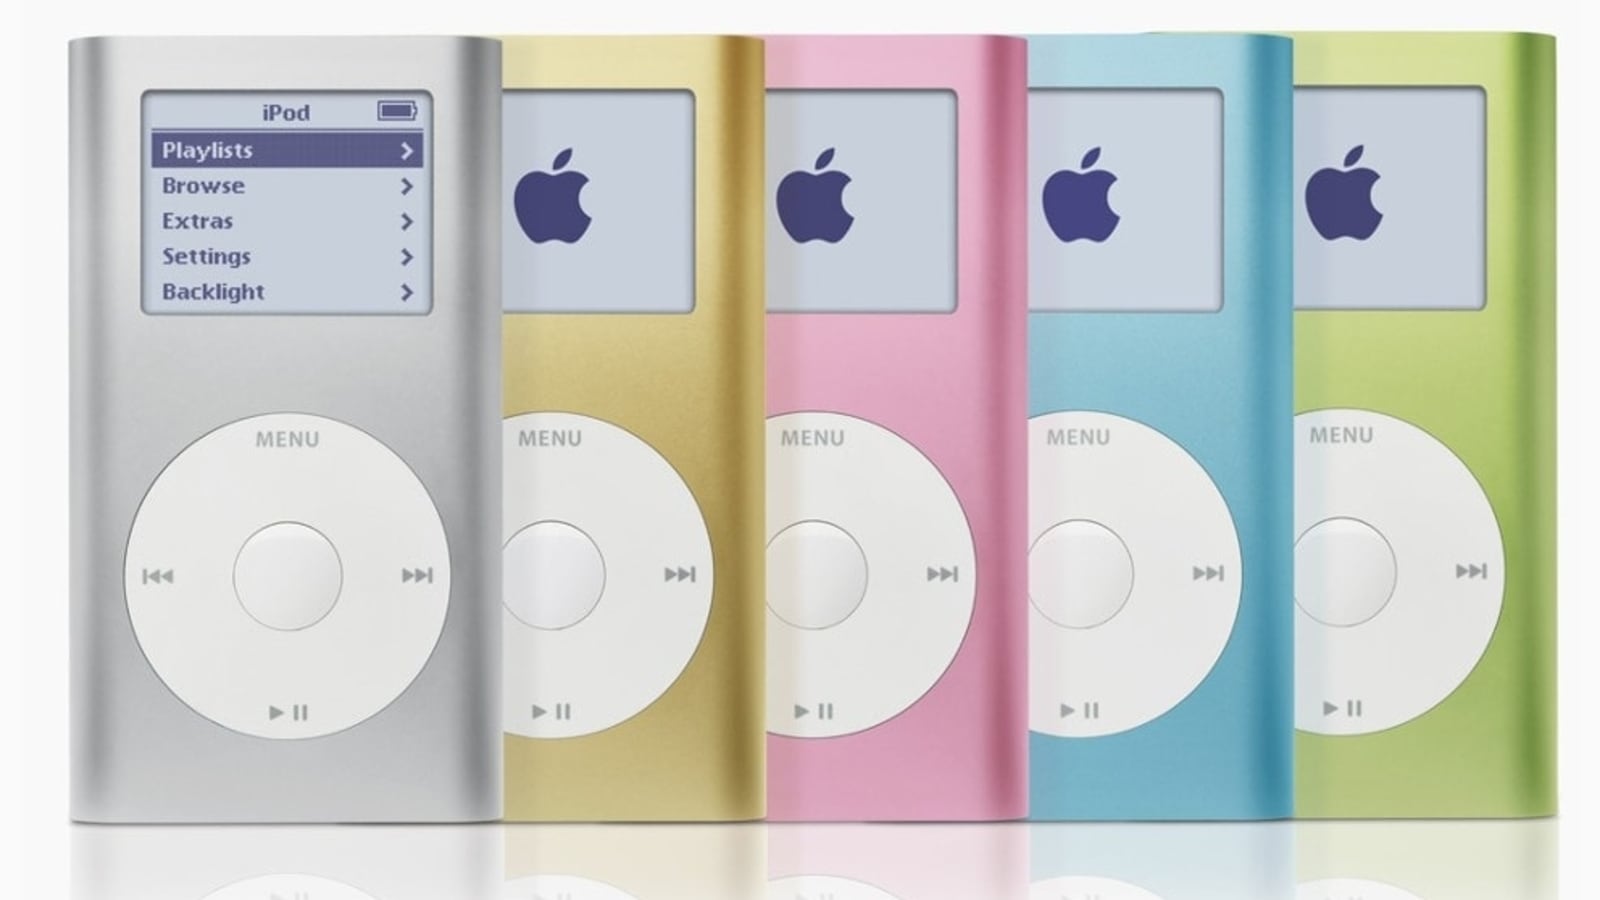 Apple iPod descontinuado, pero echa un vistazo a estas alternativas de iPod, desde el Walkman hasta el Mighty Vibe